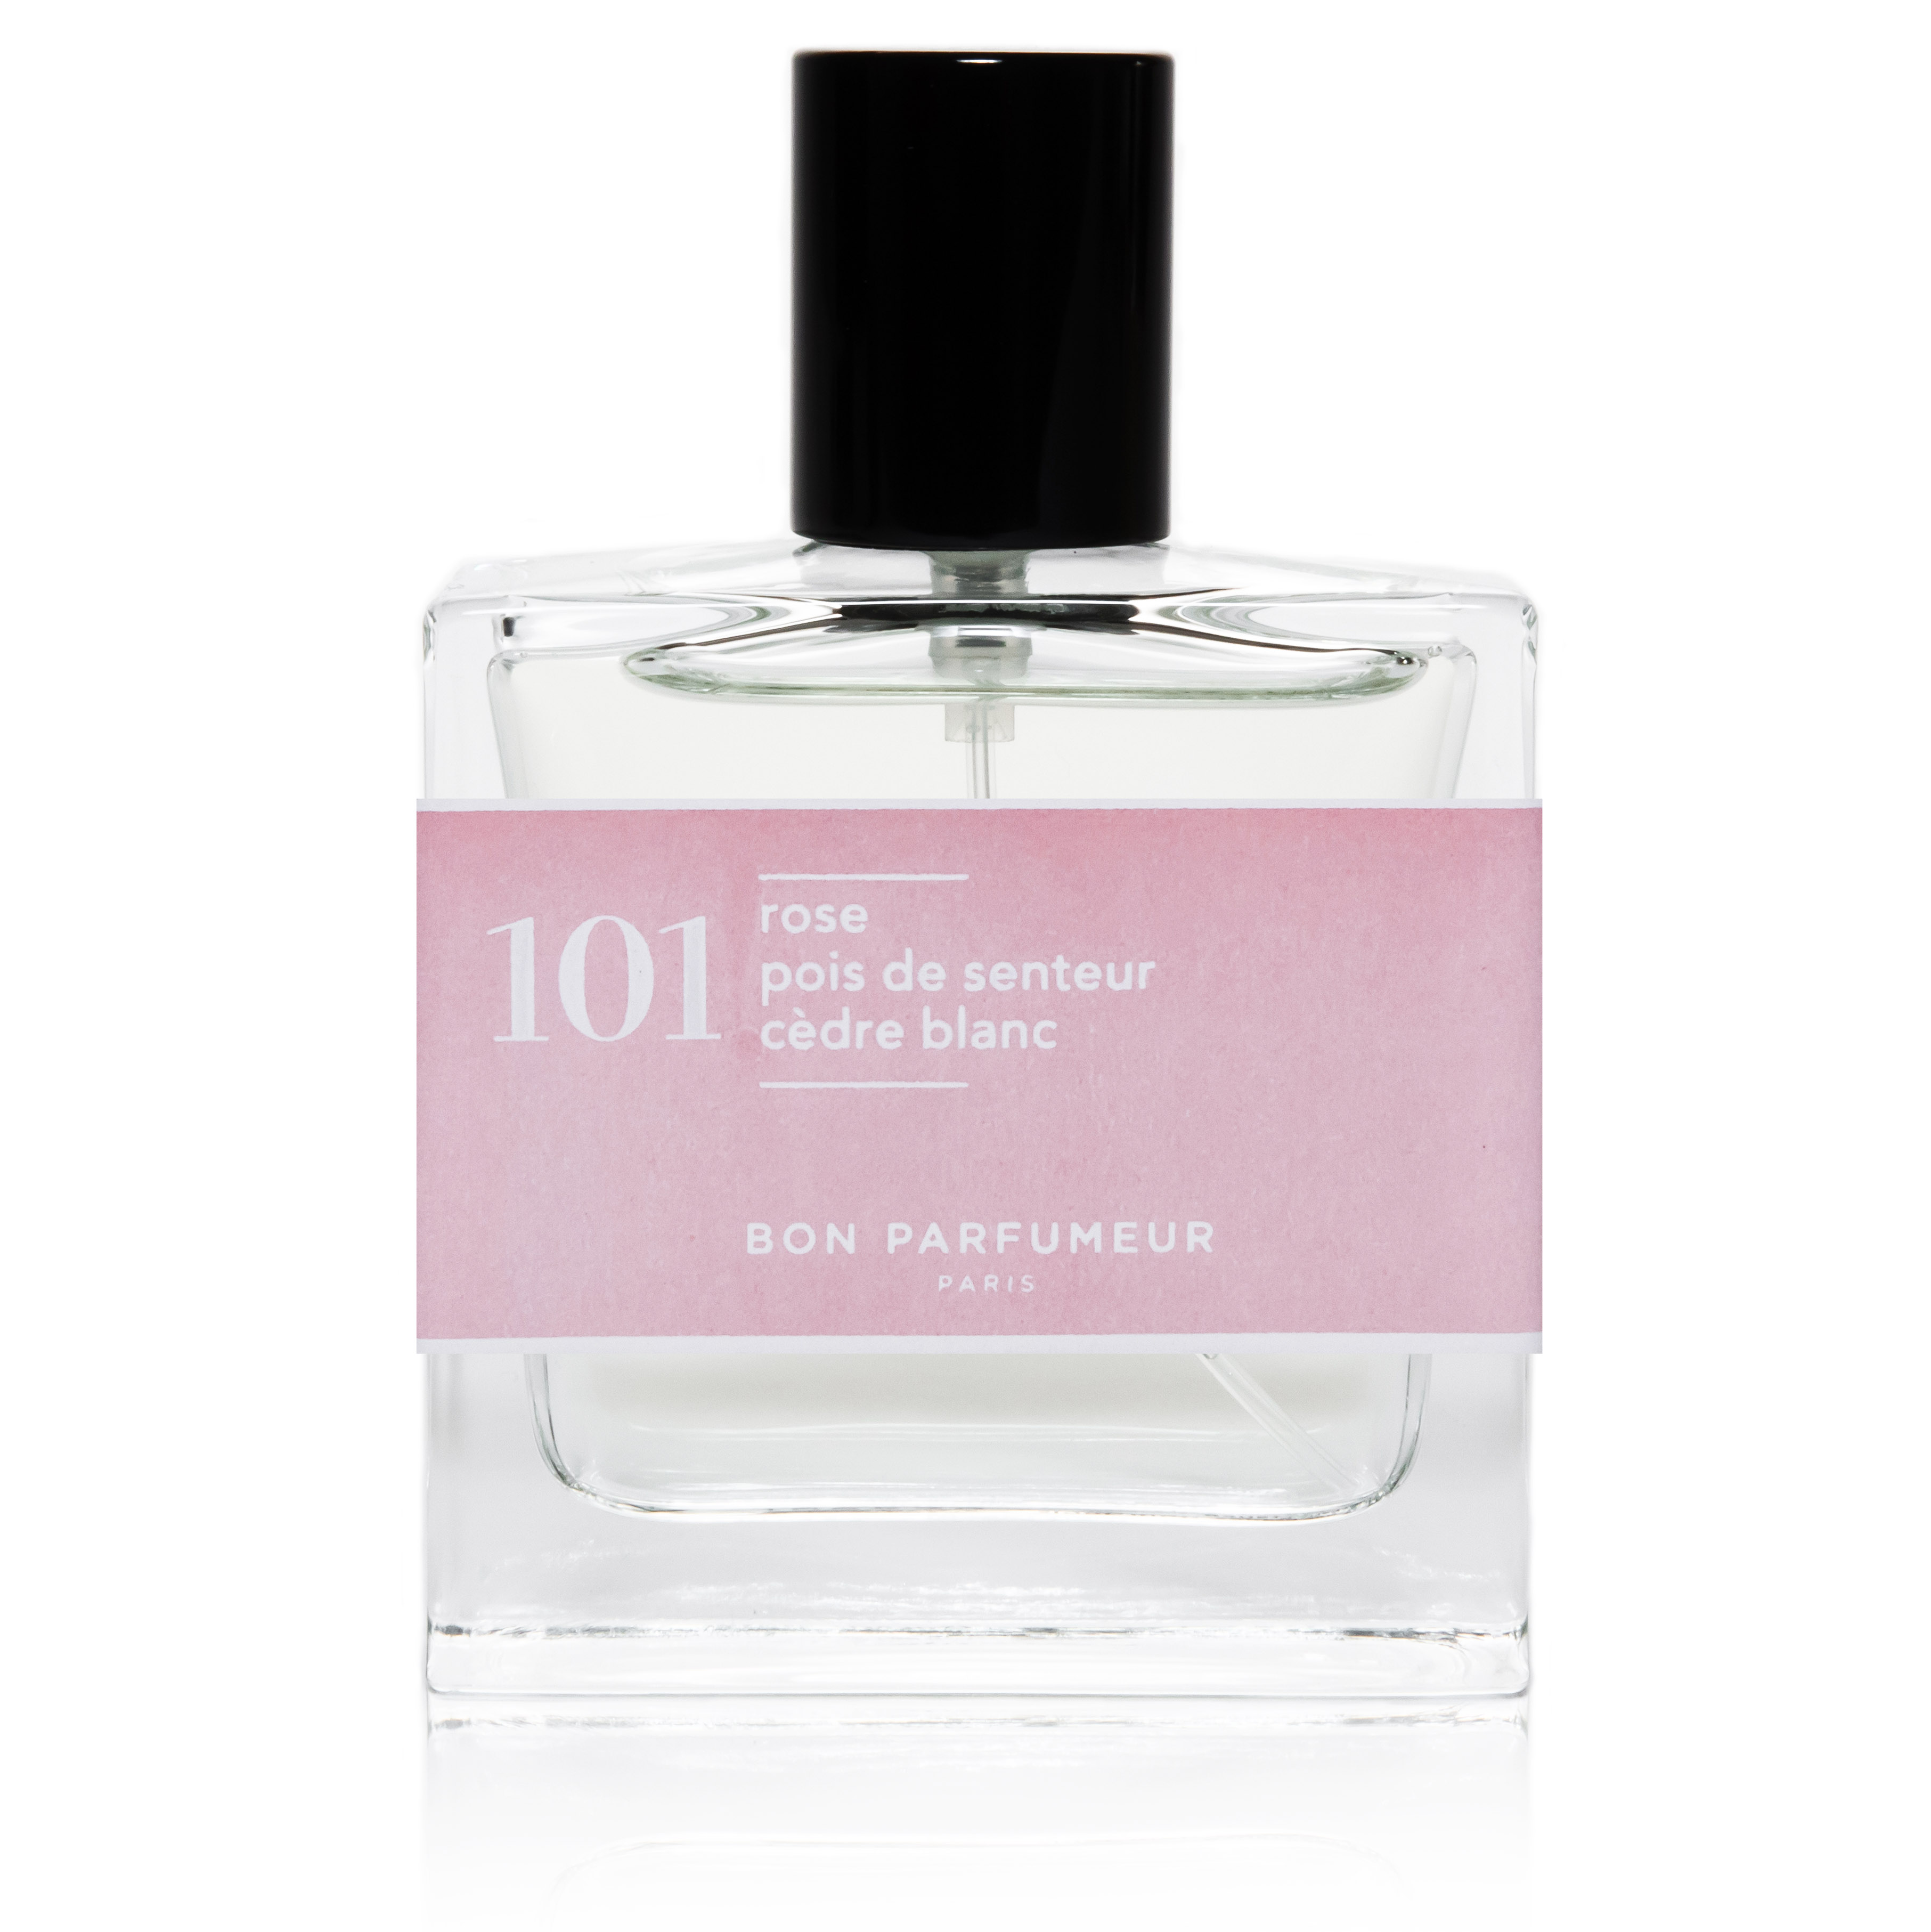 Bon Parfumeur Eau de Parfum 101 30ML Rose, Sweet Pea and White Cedar